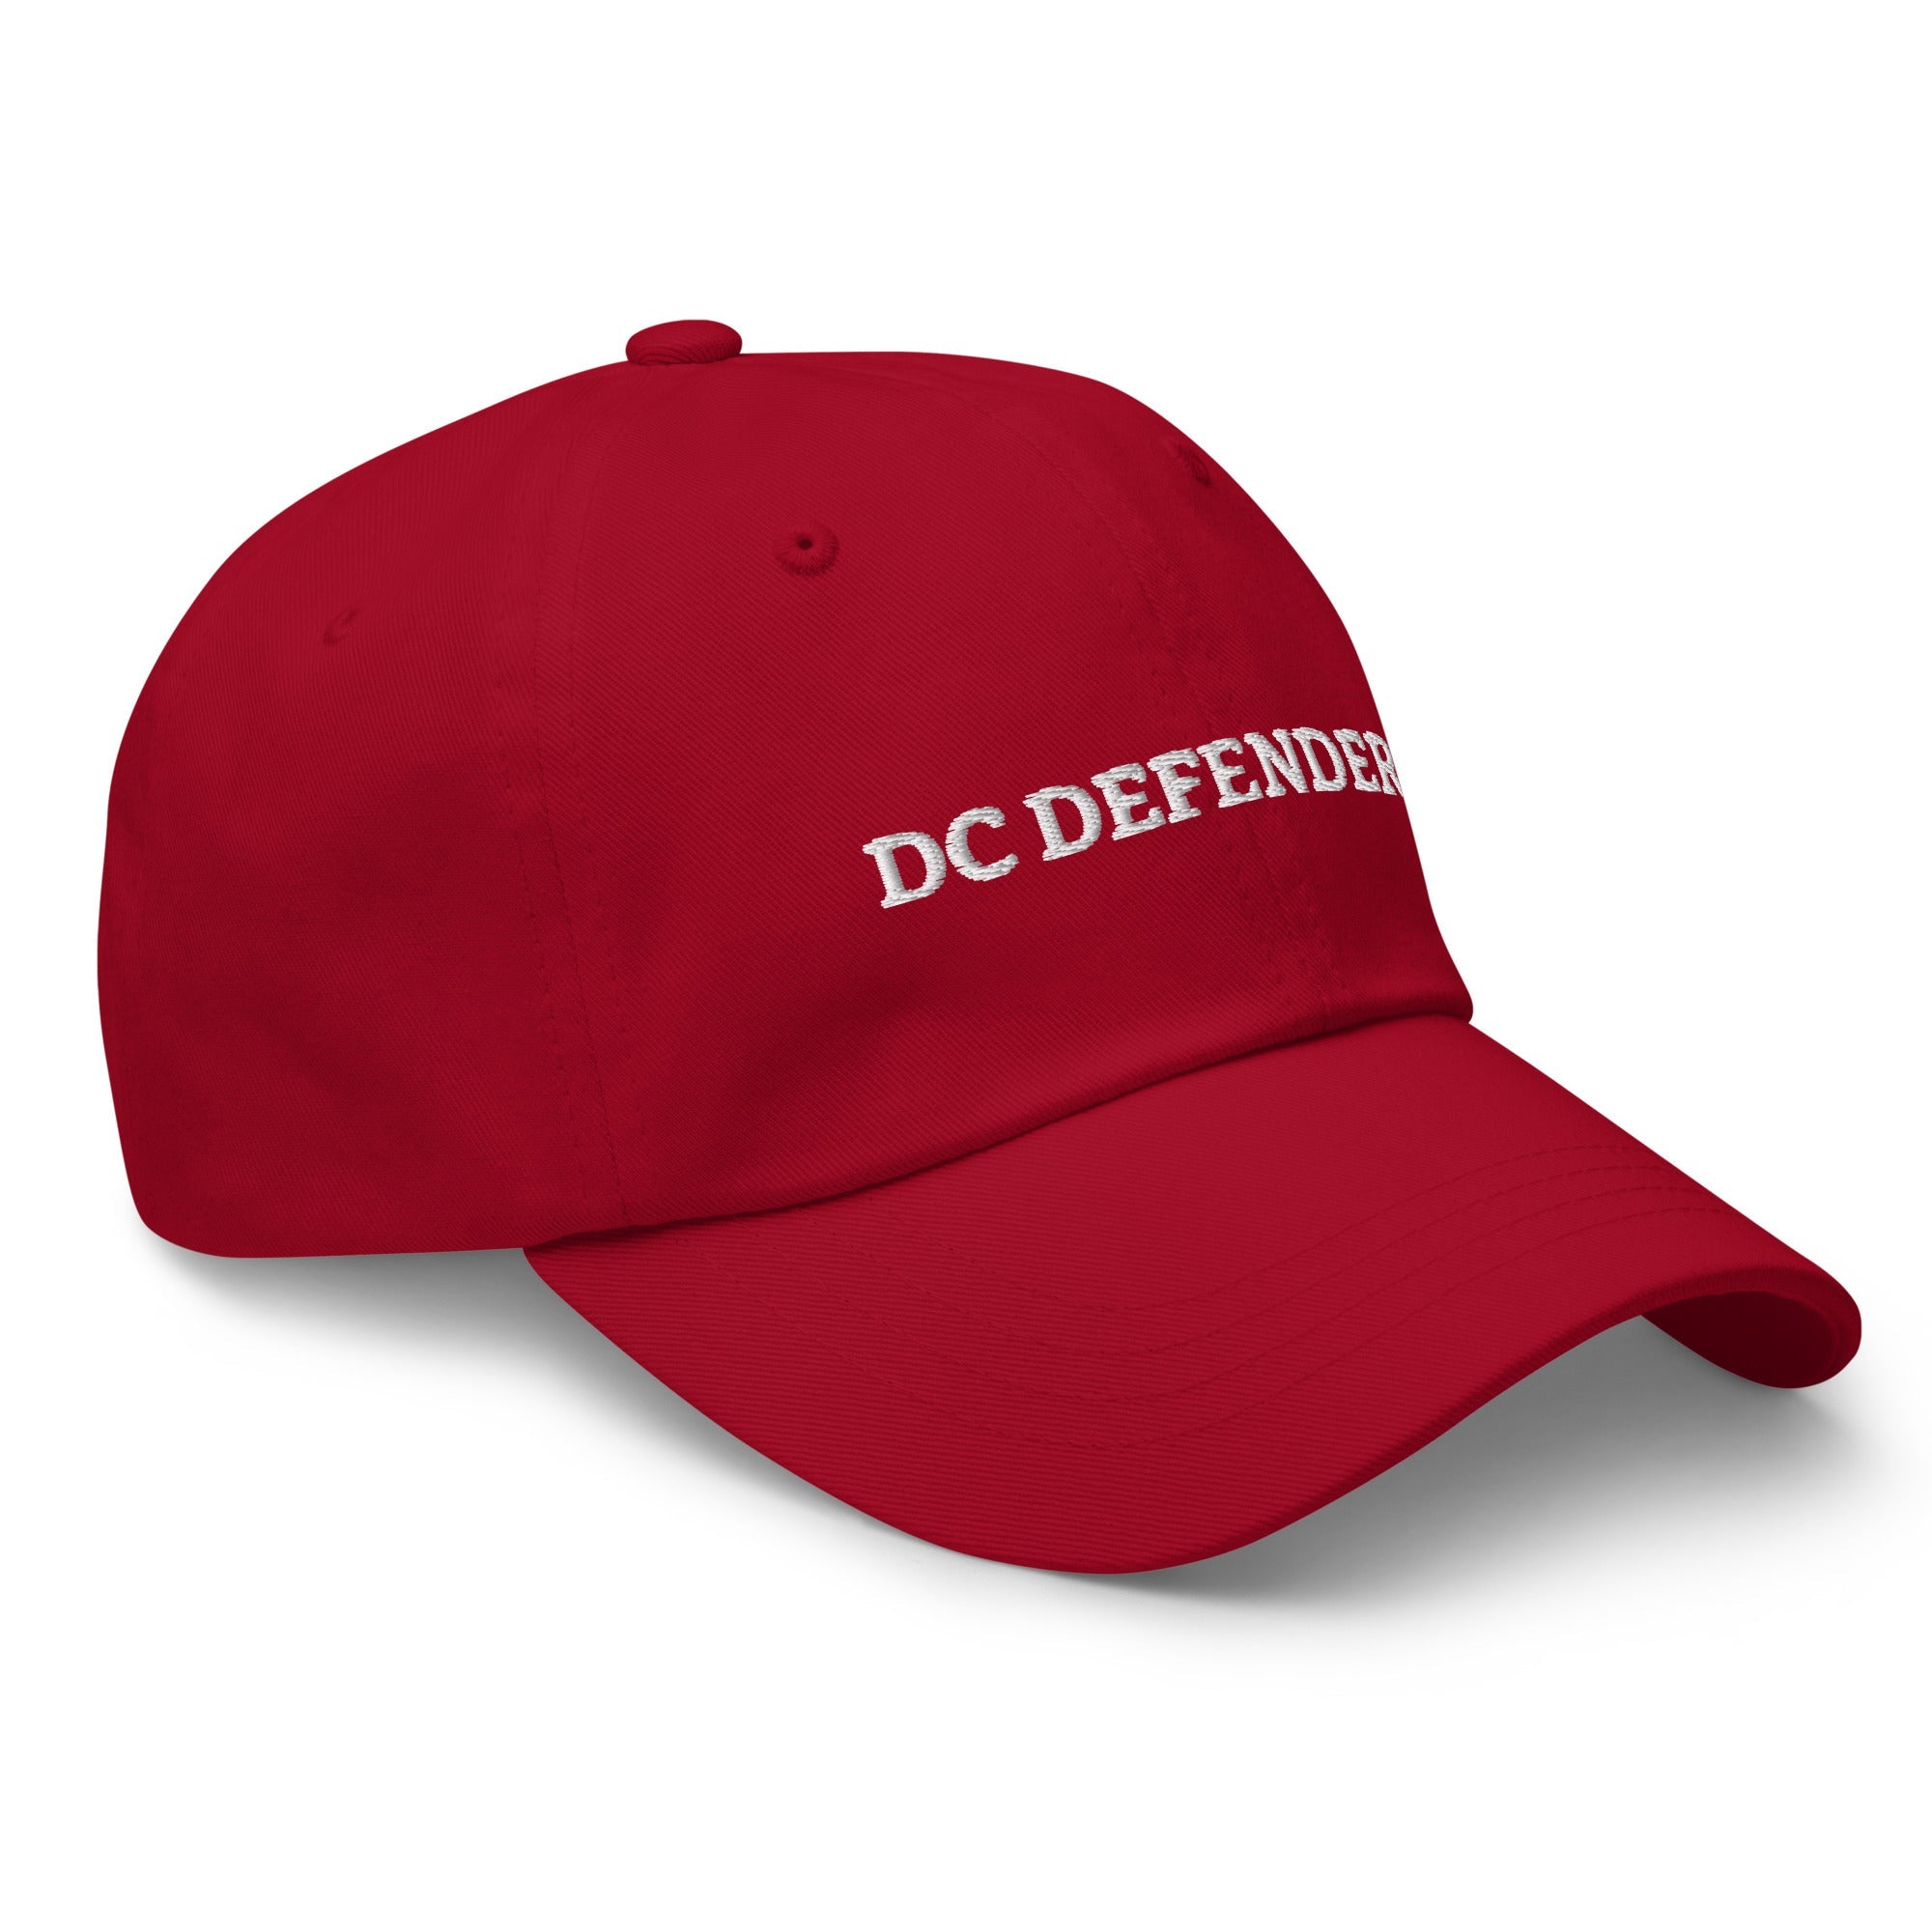 TDCD Dad hat